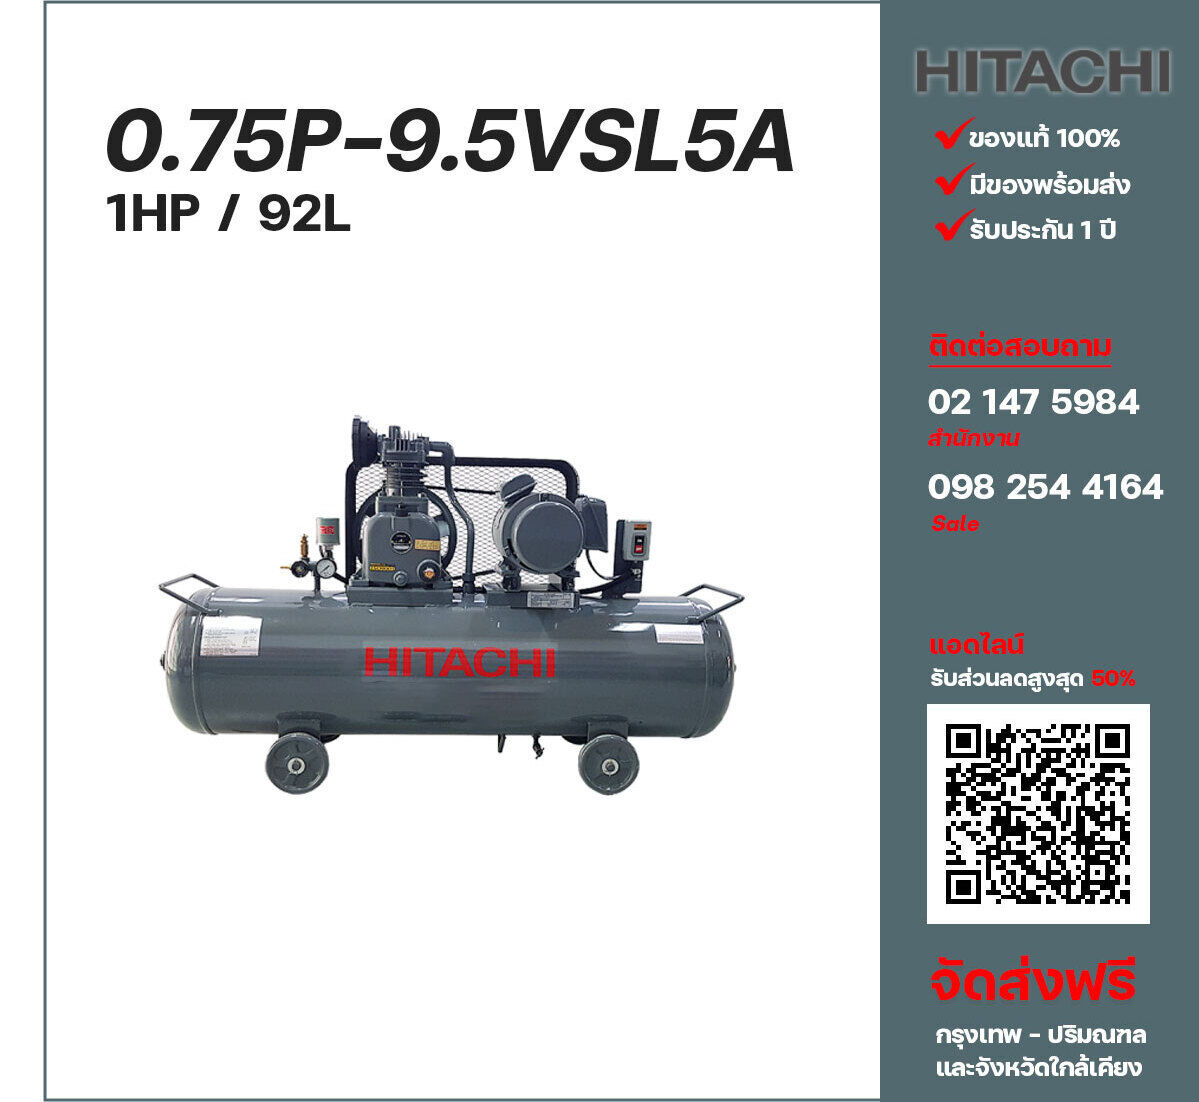 ปั๊มลมฮิตาชิ HITACHI รุ่นใช้น้ำมัน 0.75P-9.5VSL5A220V ปั๊มลมลูกสูบ ขนาด 1 สูบ 1 แรงม้า 92 ลิตร Hitachi พร้อมมอเตอร์ Hitachi ไฟ 220V ส่งฟรี กรุงเทพฯ-ปริมณฑล รับประกัน 1 ปี